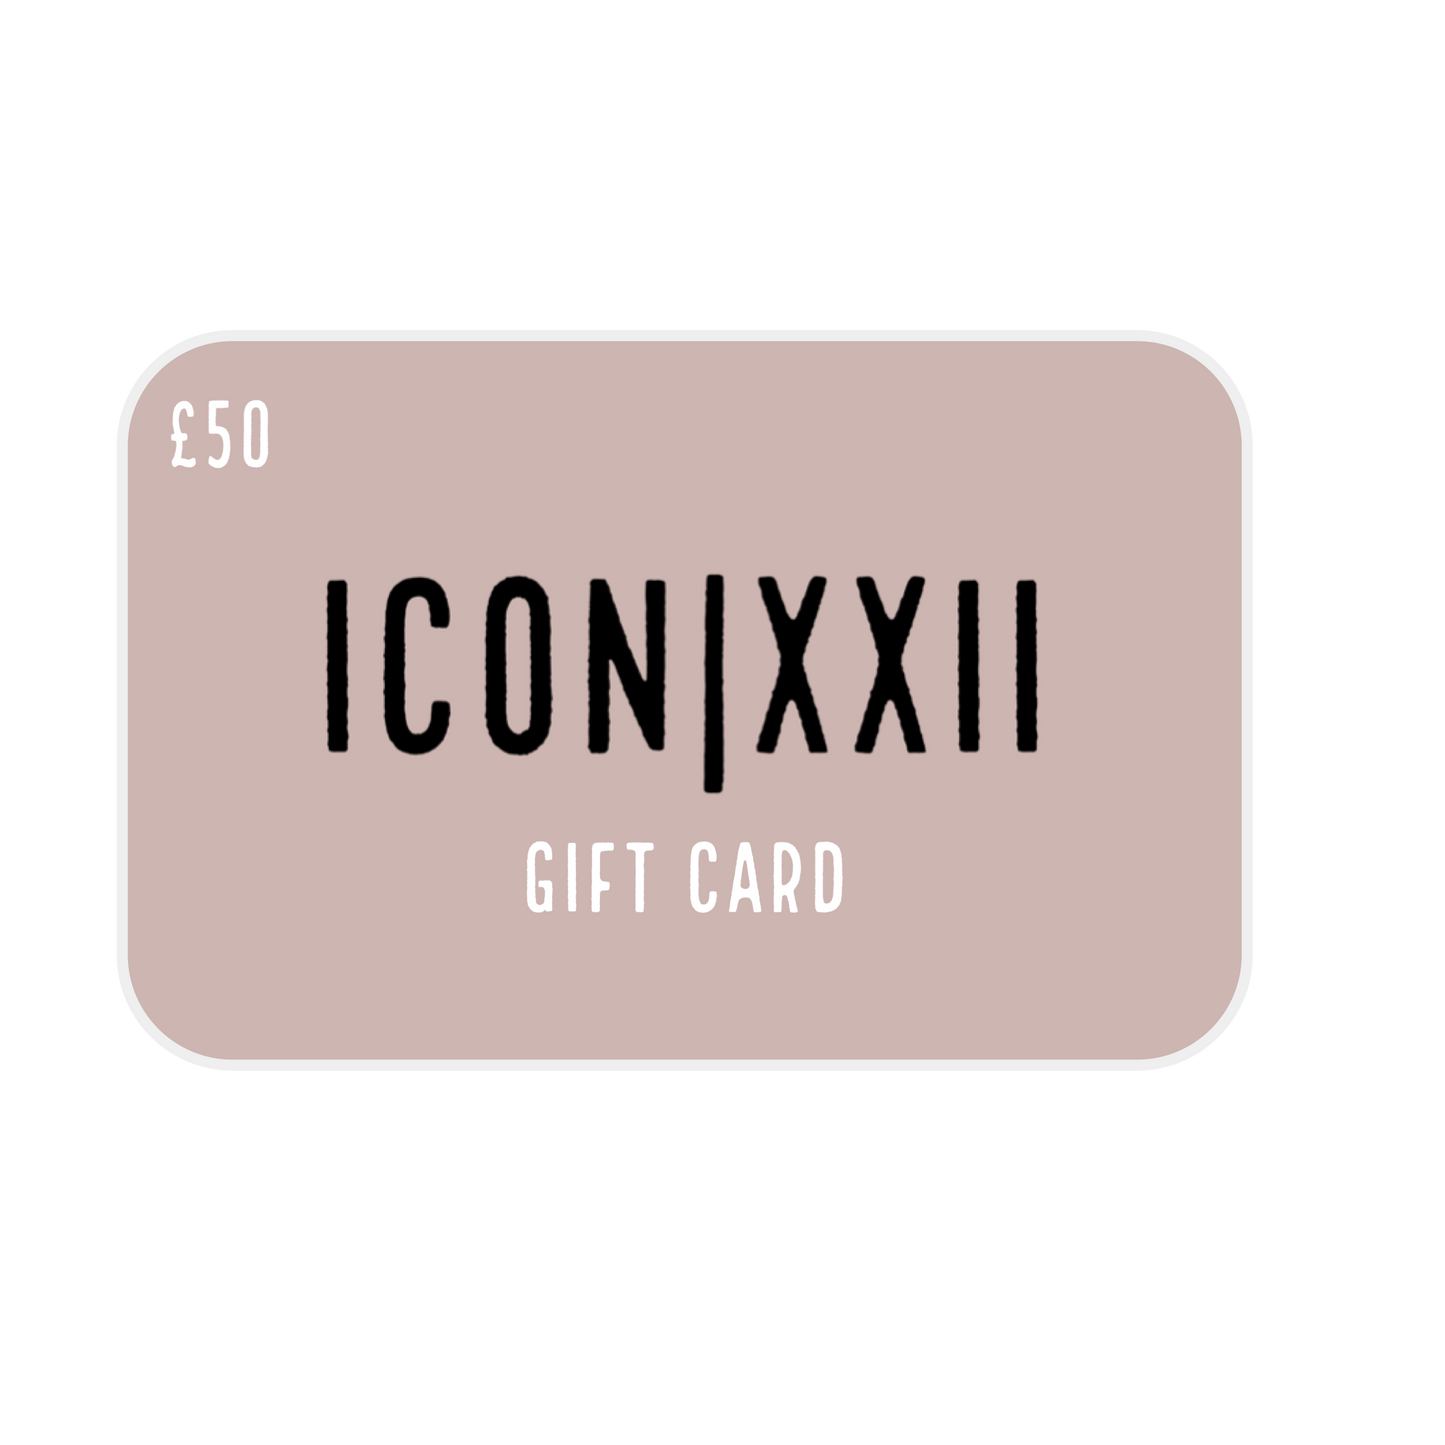 ICON|XXII Gift Card - ICON|XXII